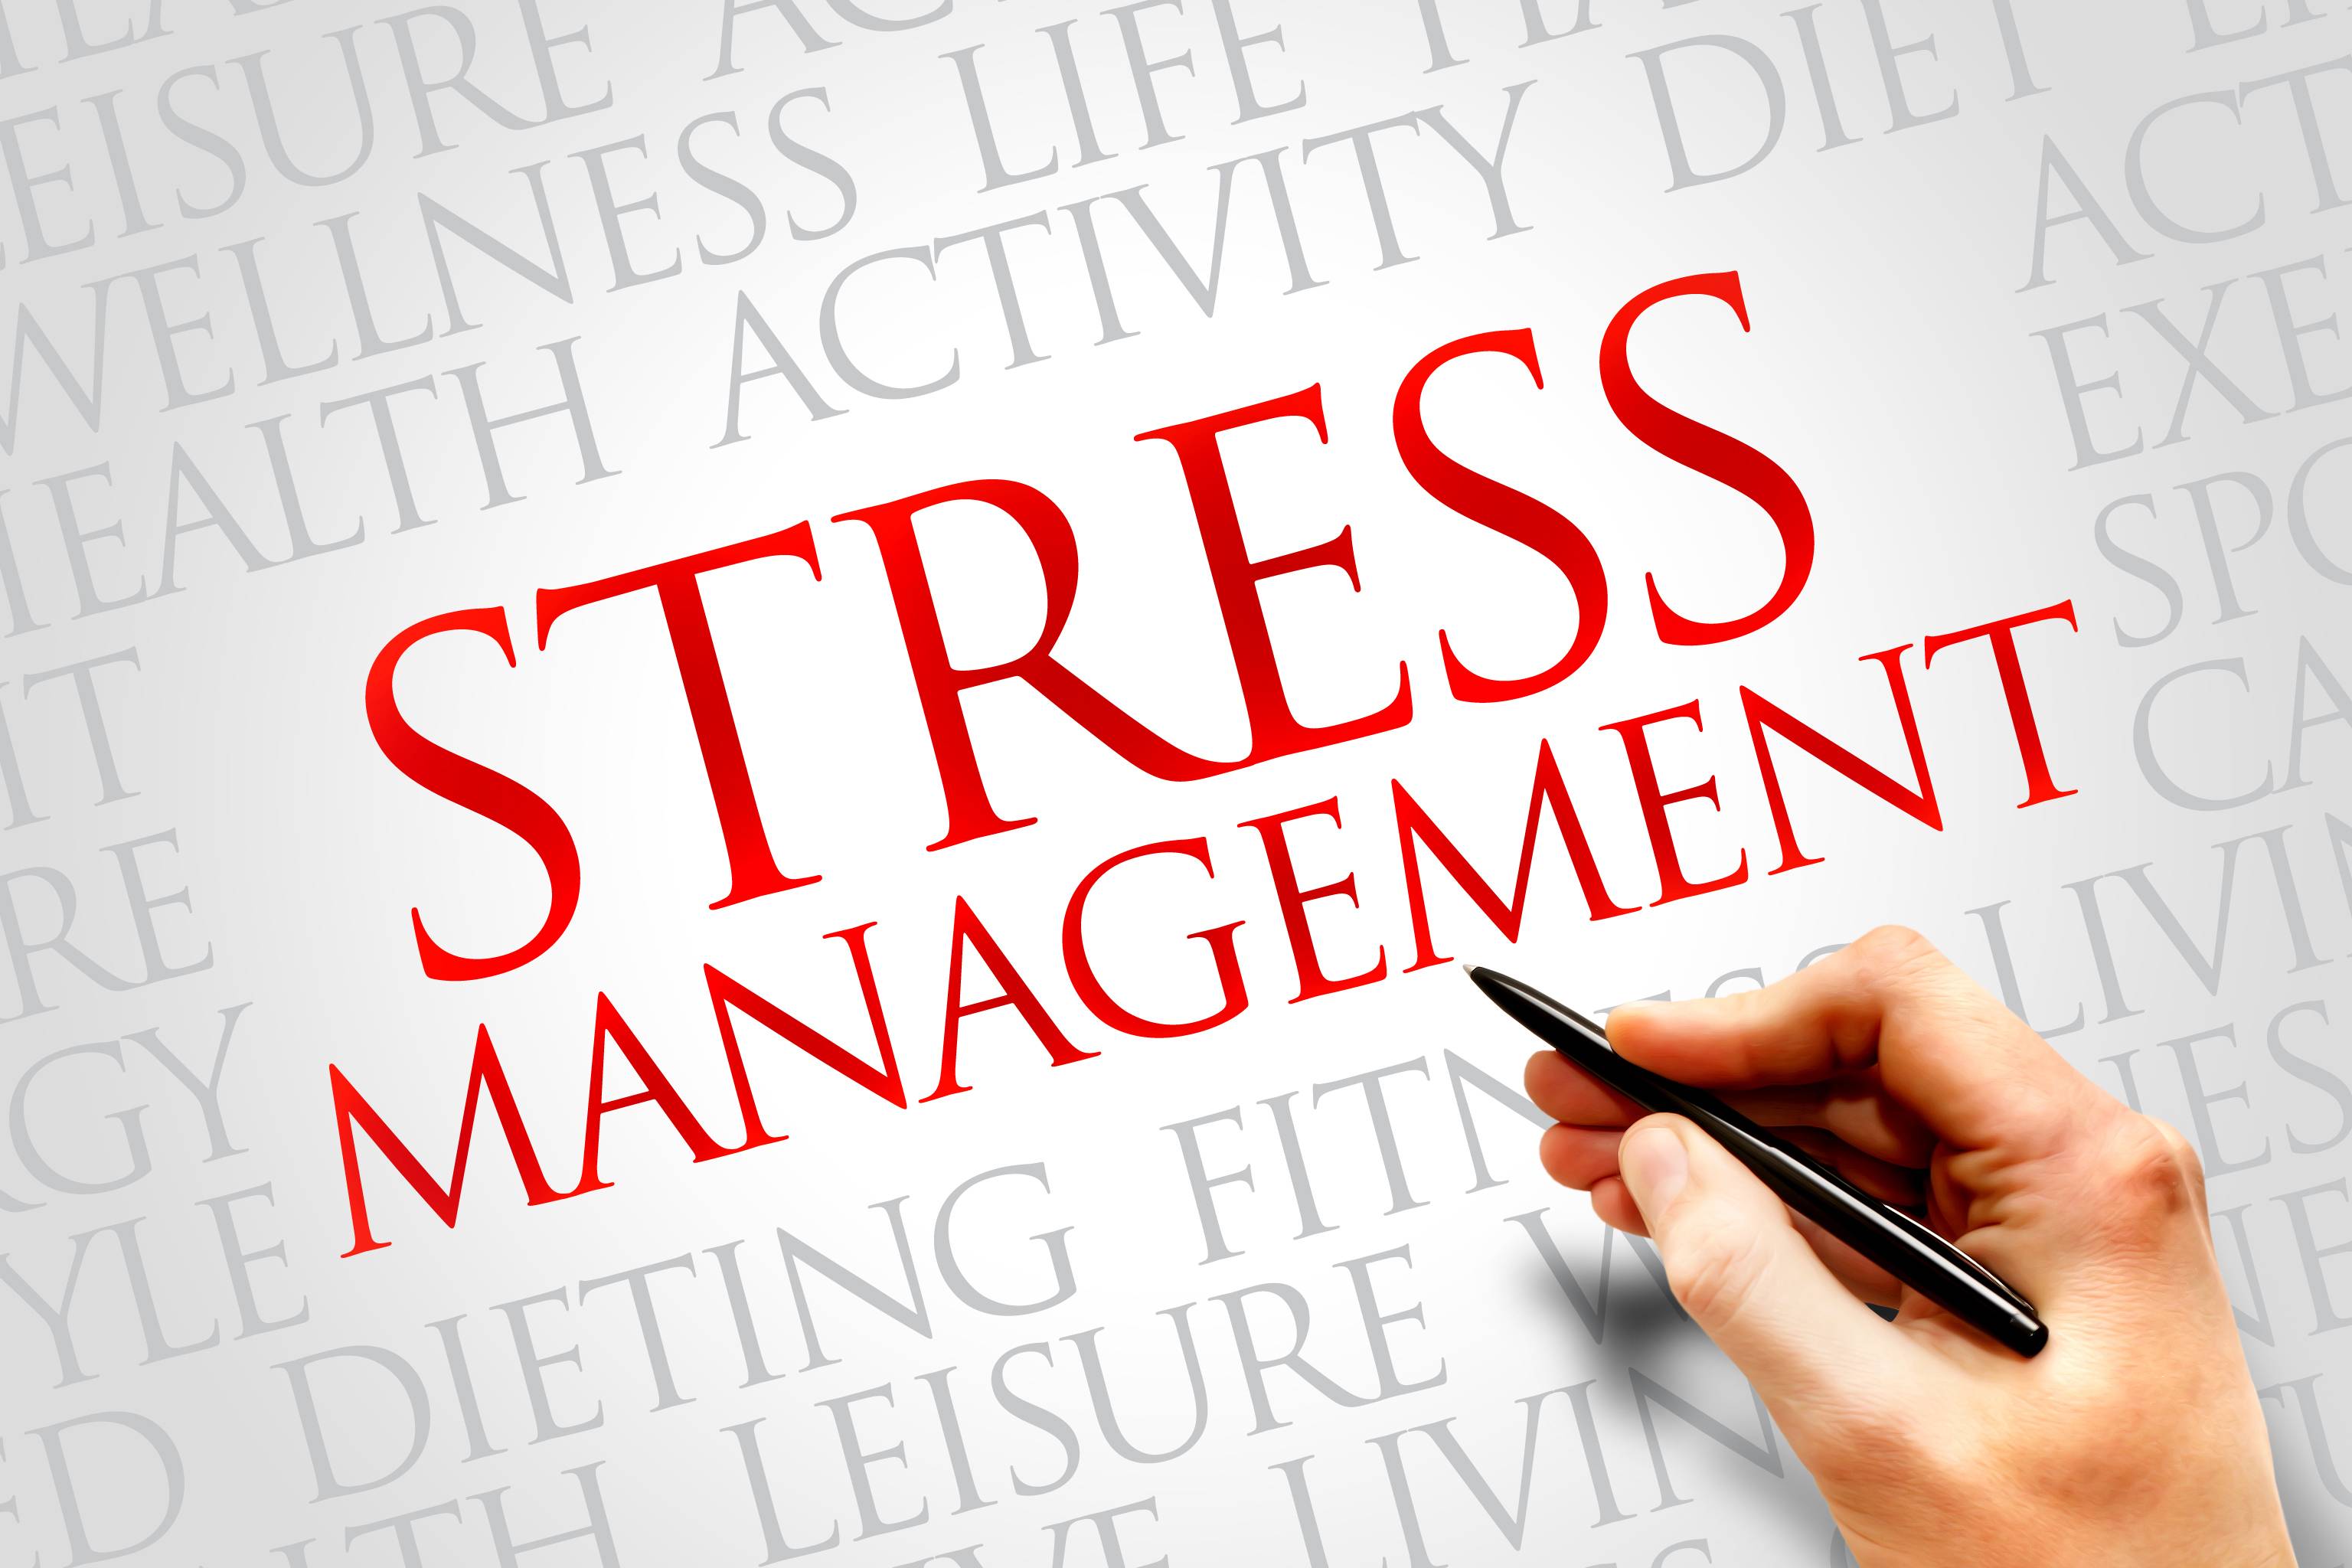 مدیریت استرس کاهش تنش کاهش استرس درمان استرس بهبود سلامت روان اثرات استرس مدیریت استرس کاهش تنش کاهش استرس درمان استرس بهبود سلامت روان اثرات استرس 